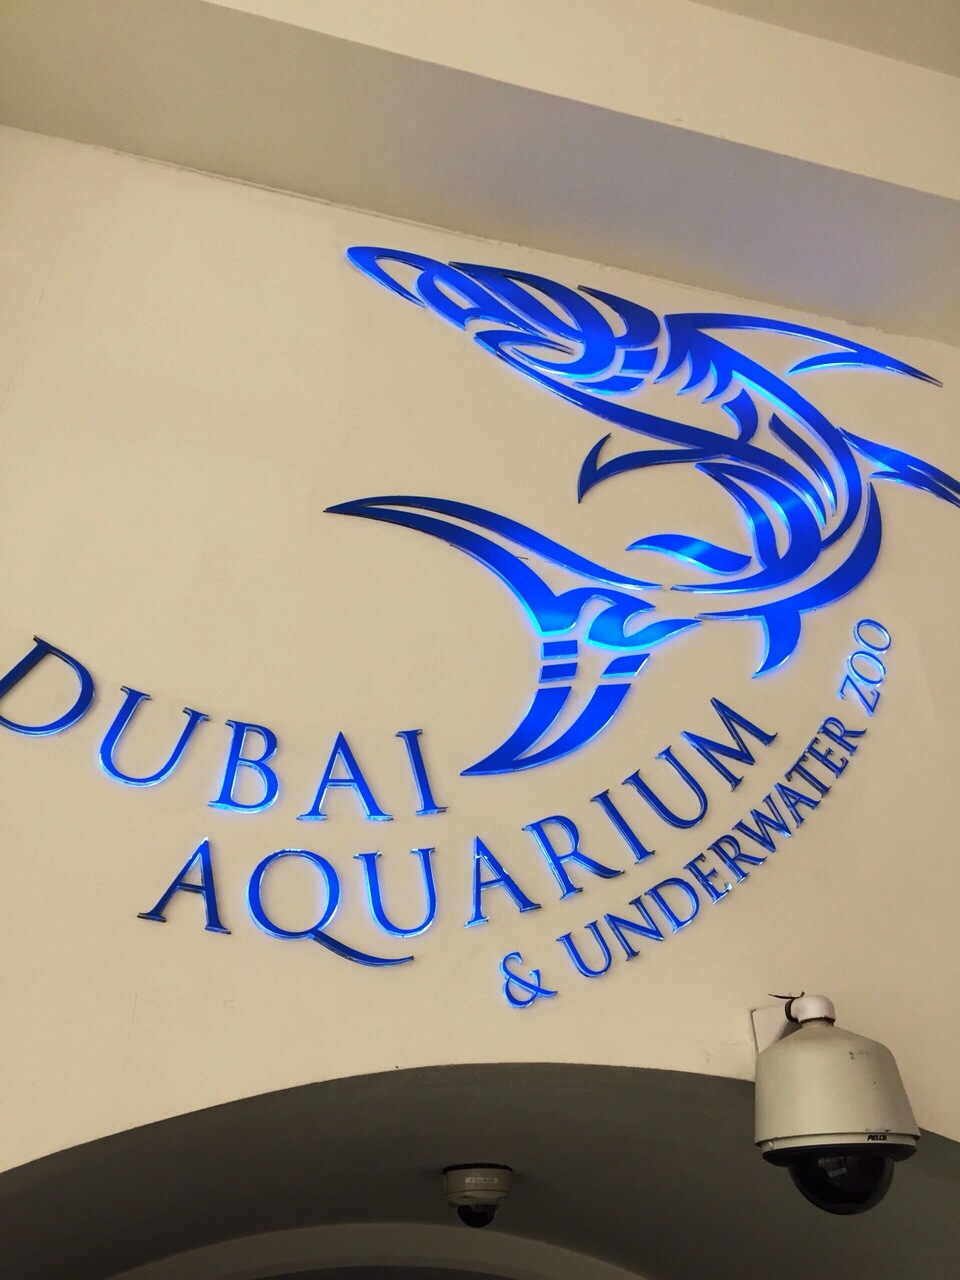 Our Trip to Dubai Aquarium and Underwater Zoo…